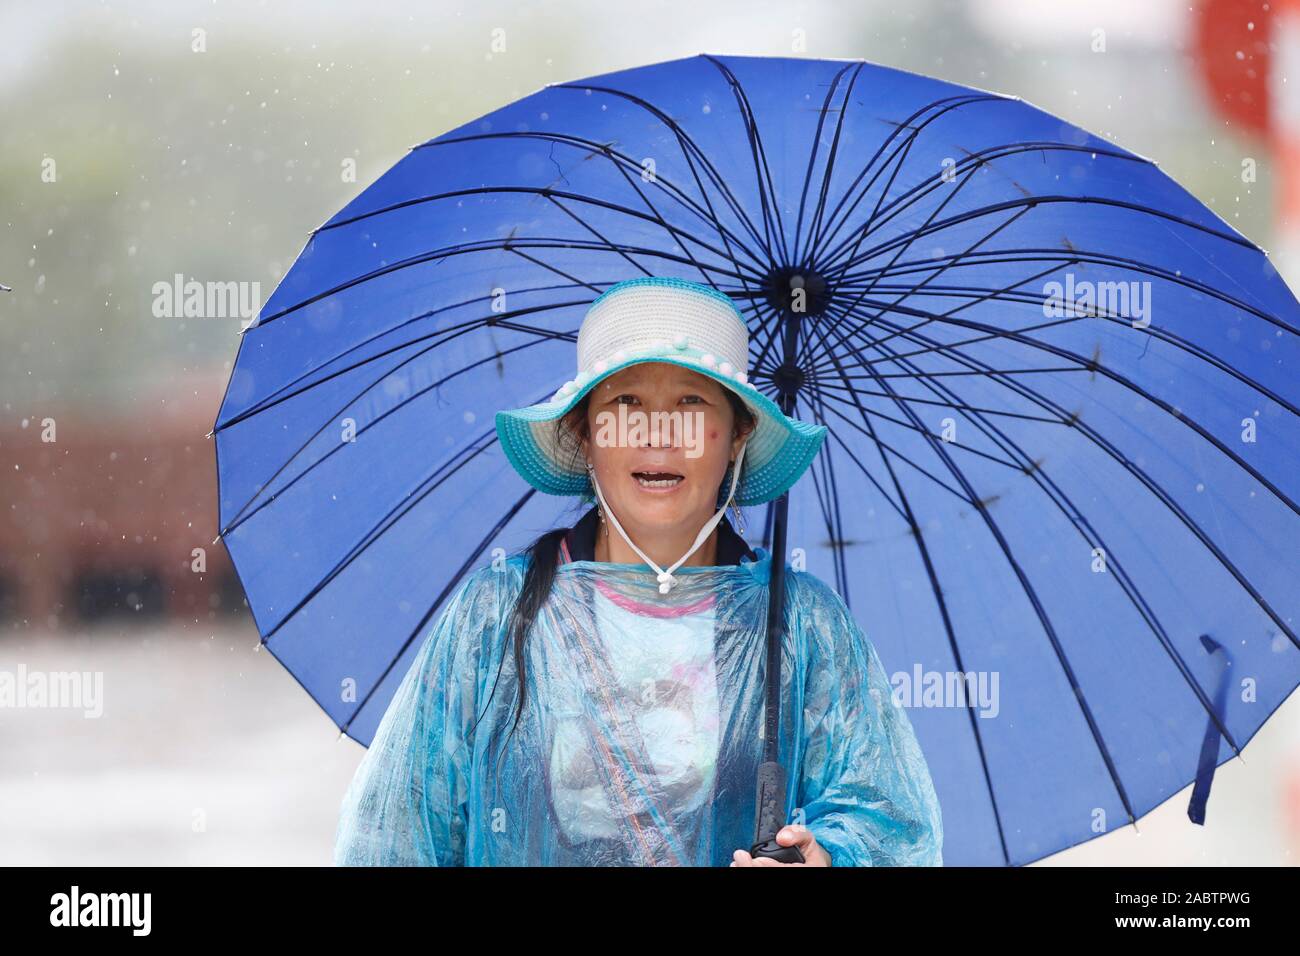 Monsun oder Regenzeit. Frau mit blauem Dach. Sapa. Vietnam. Stockfoto